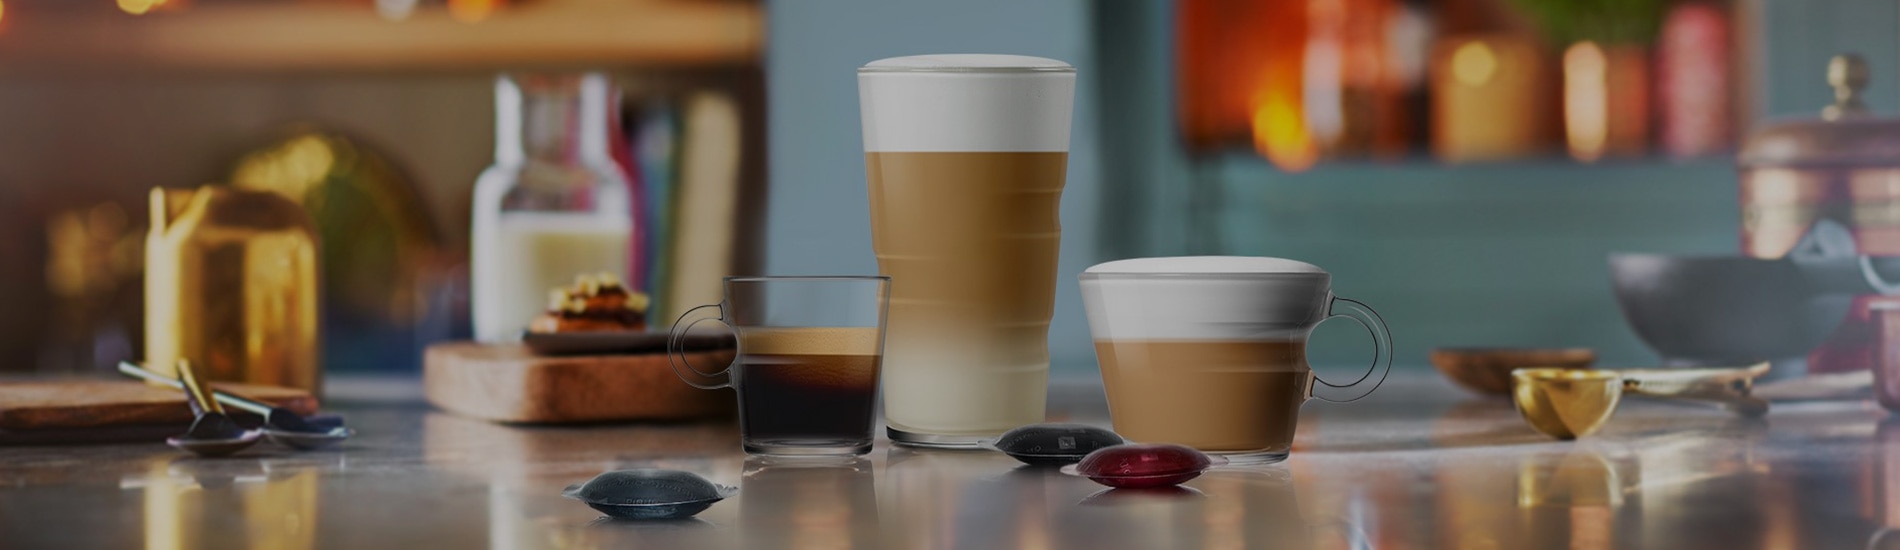 Nespresso Professional: Volver a saborear una taza de café… en la oficina